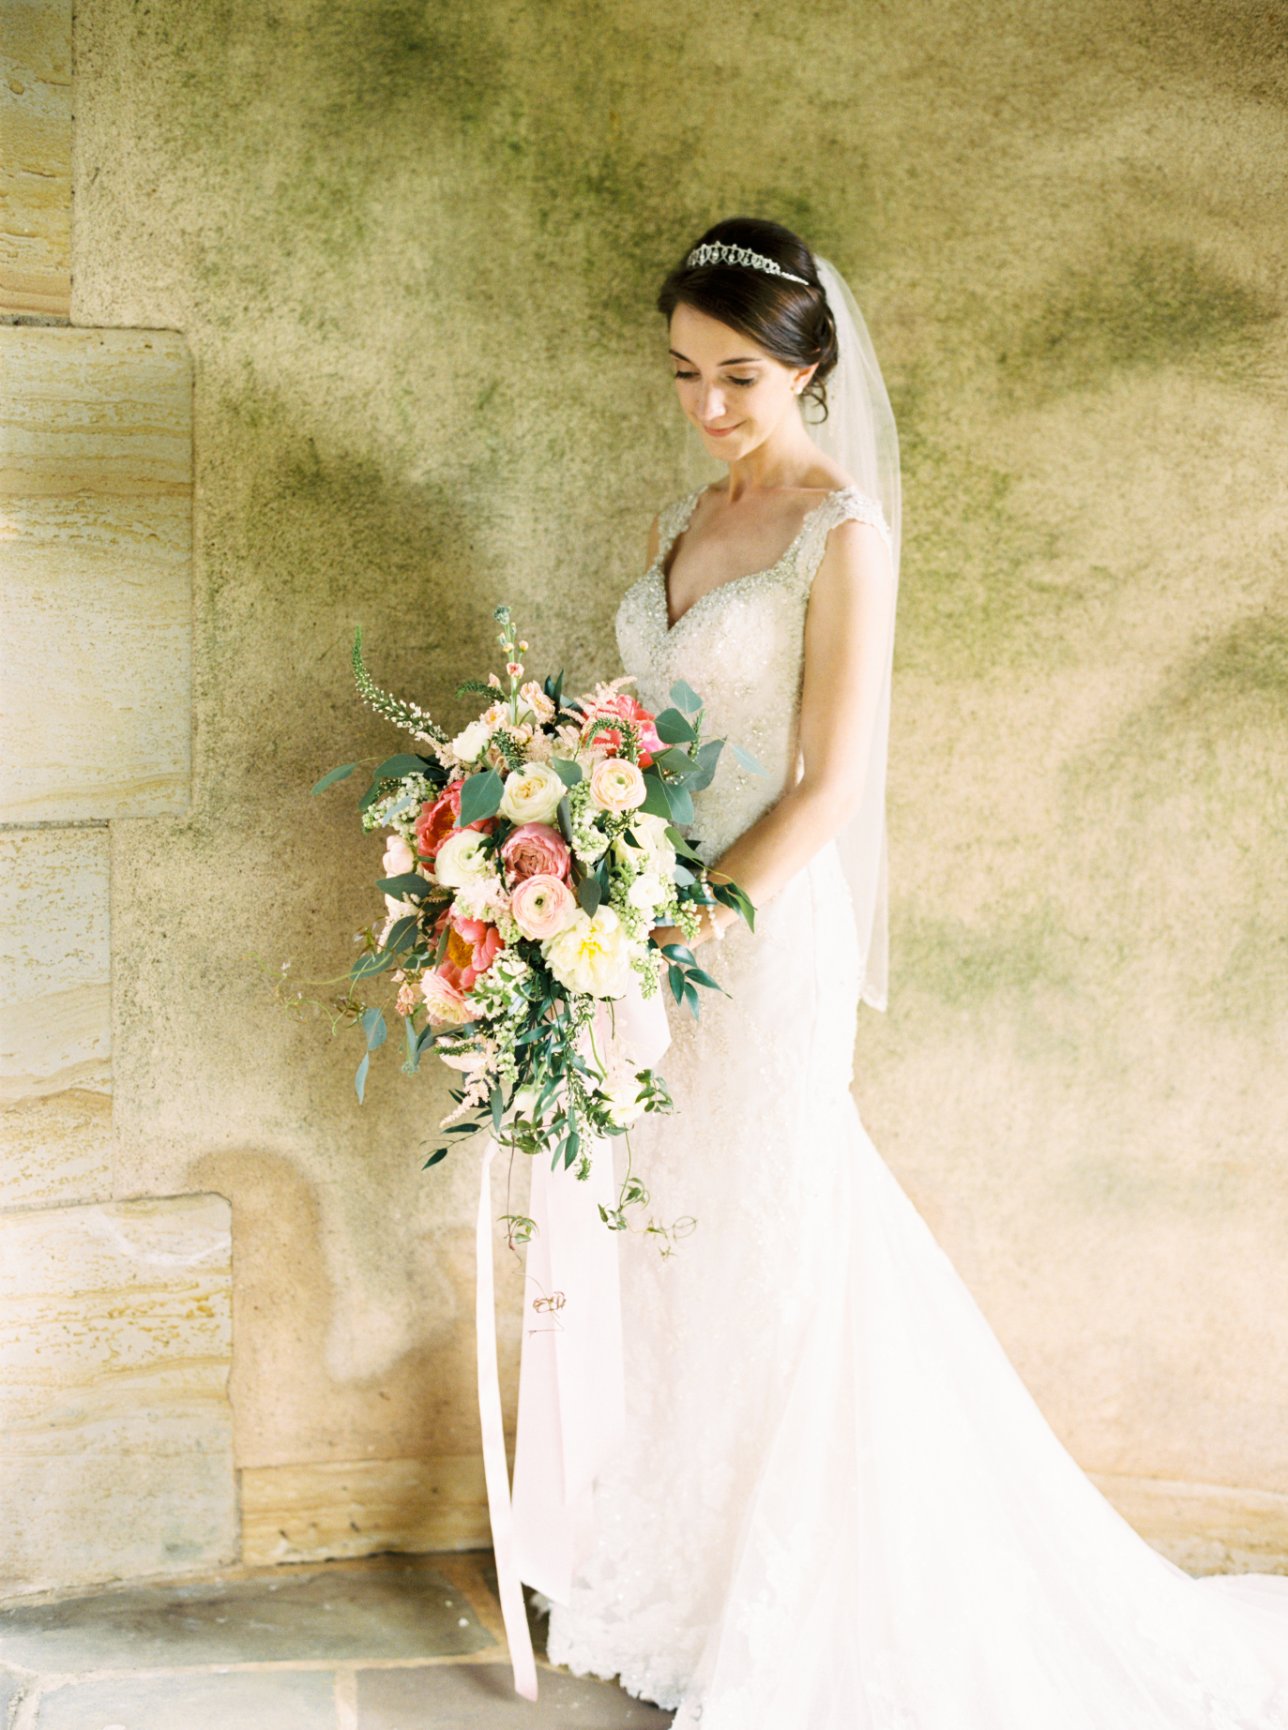 Julia & Corey - Winston-Salem Florist Weddings & Special Event Florist ...